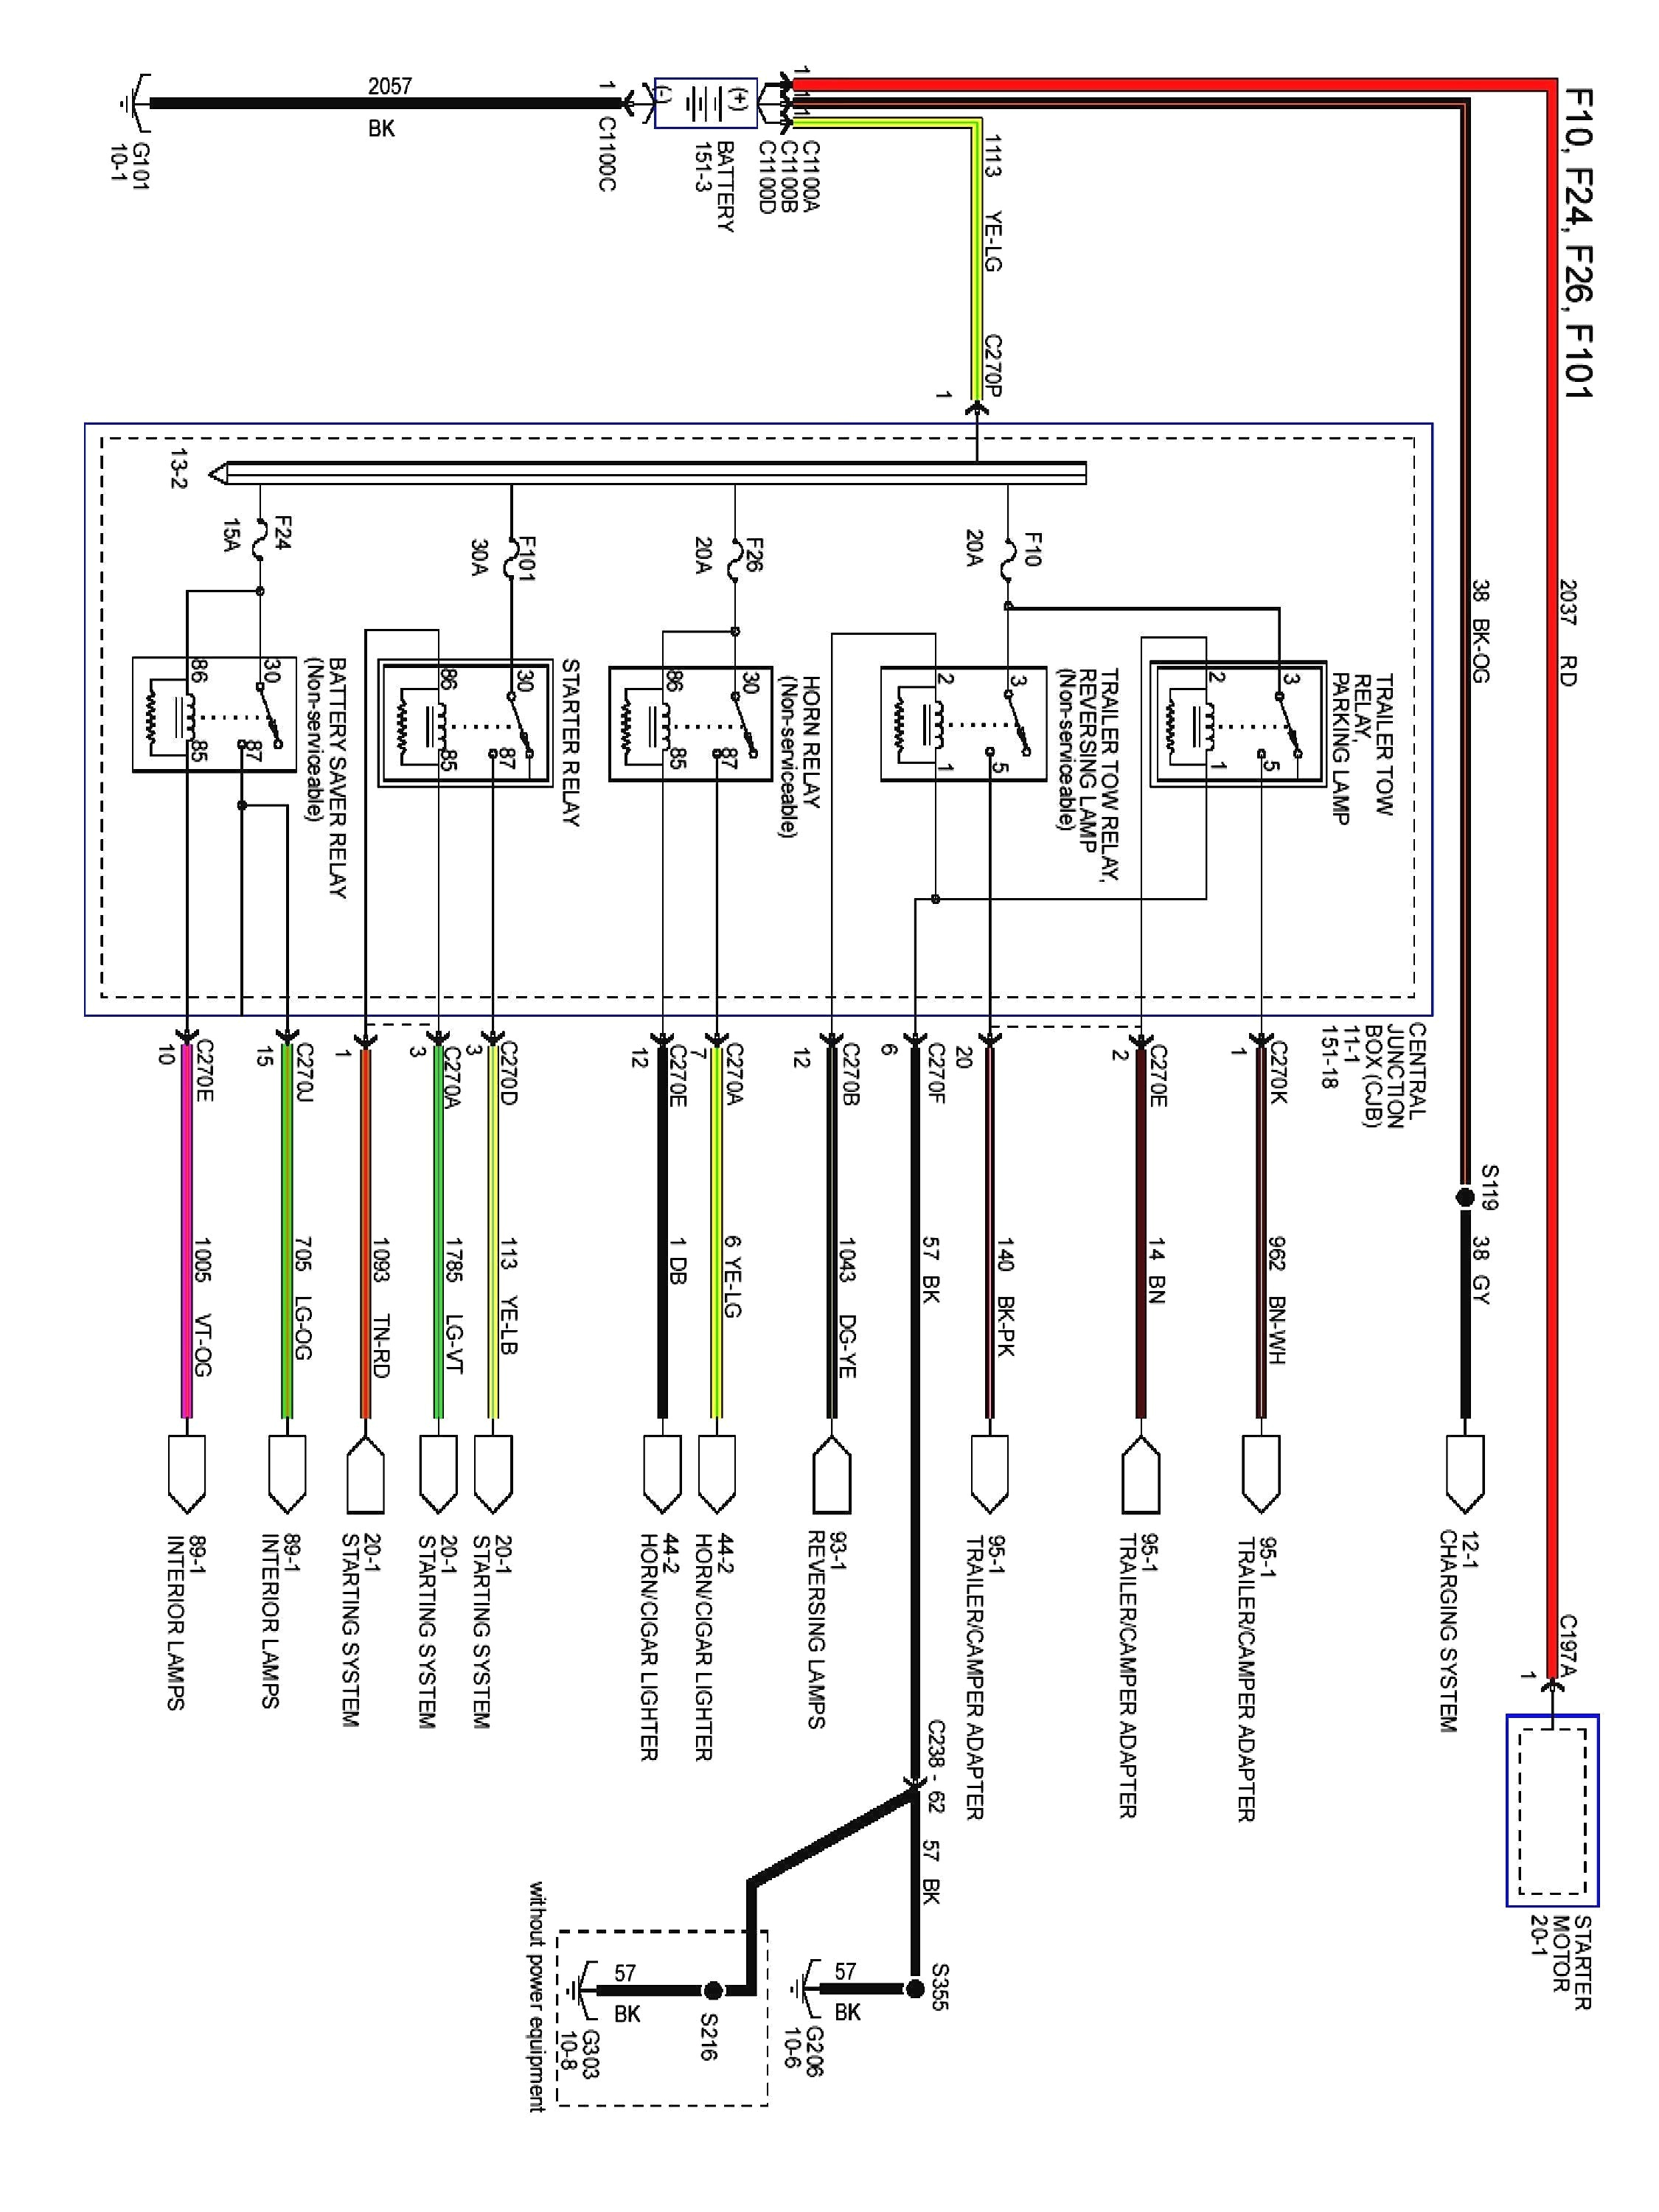 99 audi a4 radio wiring diagram best 2000 ford f 150 wiring diagram 2000 ford f150 wiring diagram of 99 audi a4 radio wiring diagram in 2000 f150 wiring diagram png